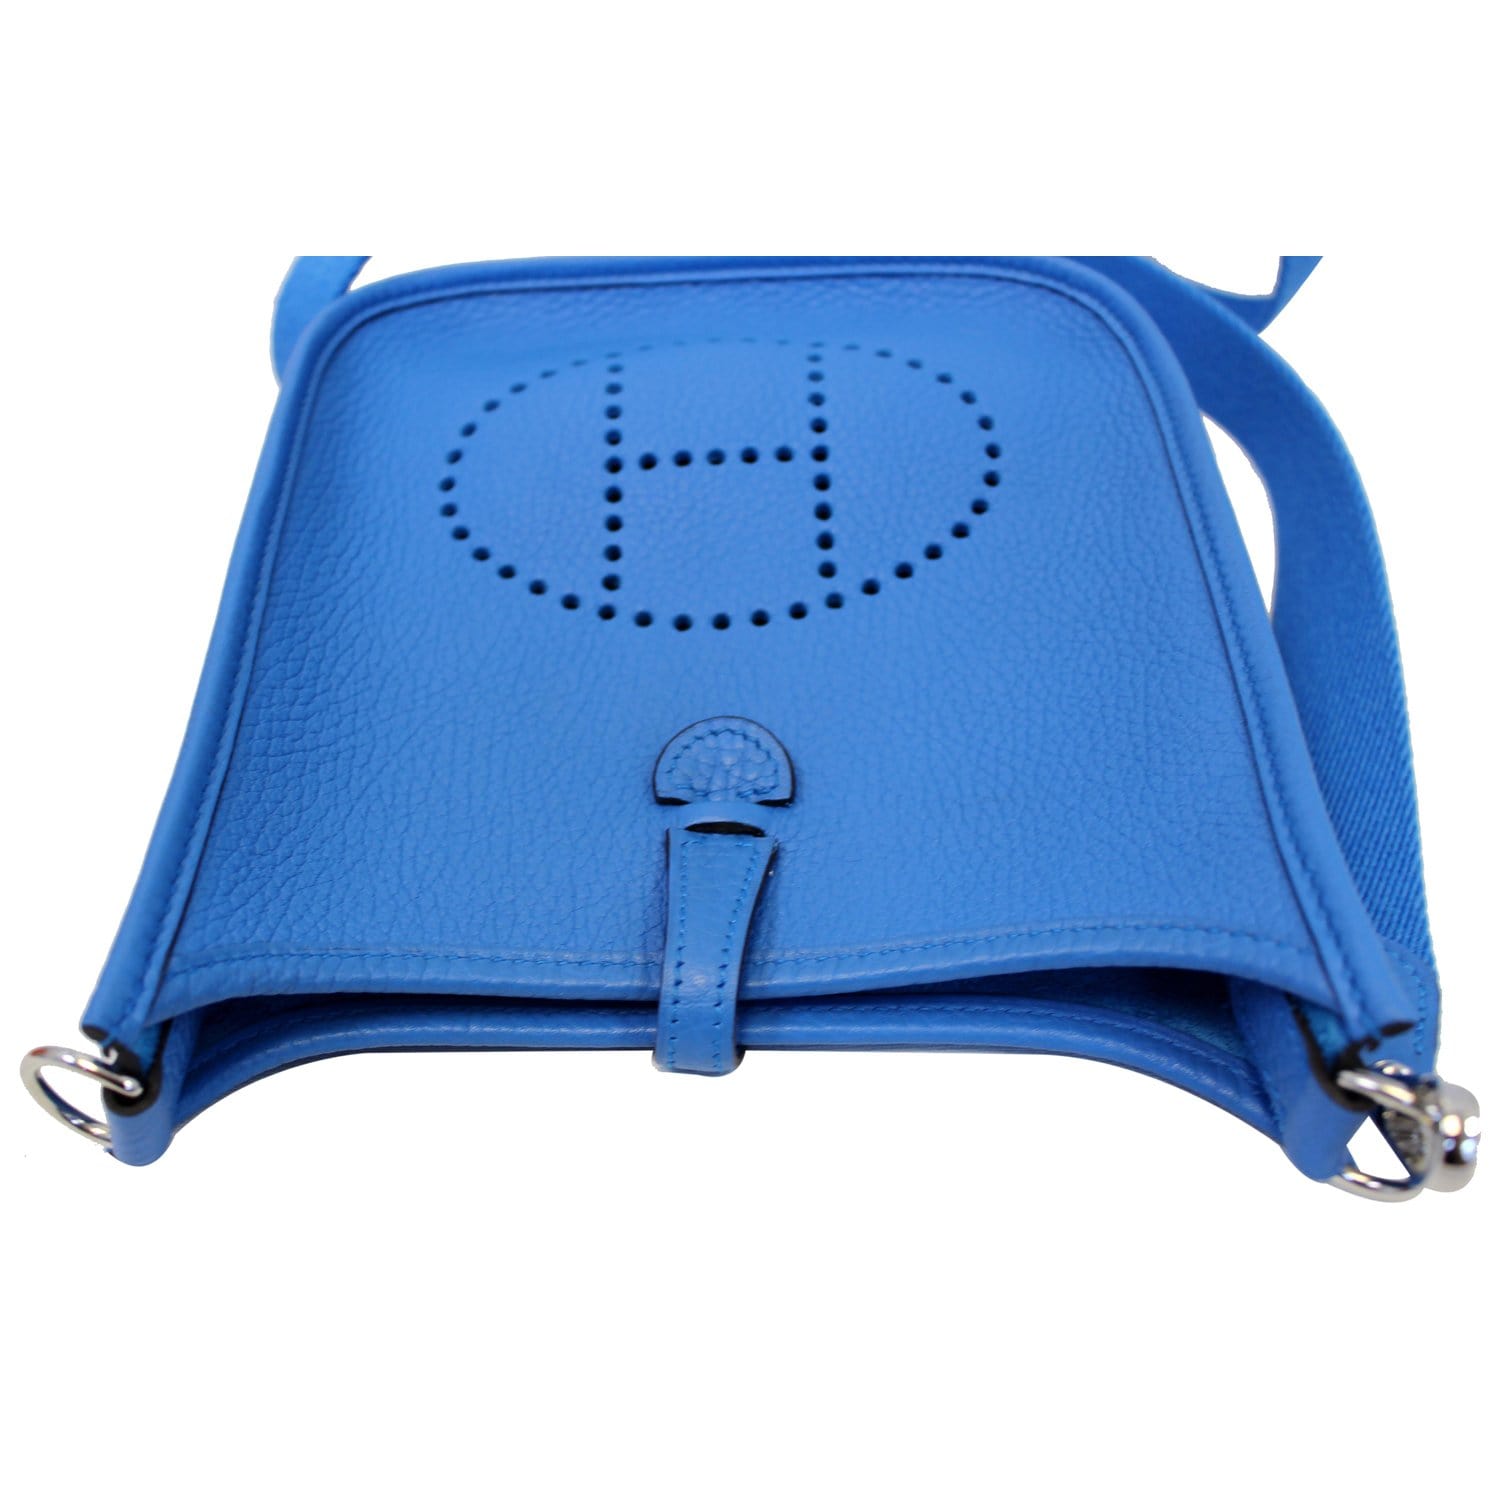 Hermes - Evelyne III 29 Messenger Bag-Blue Jean Leather, H Logo, Limited  Edition